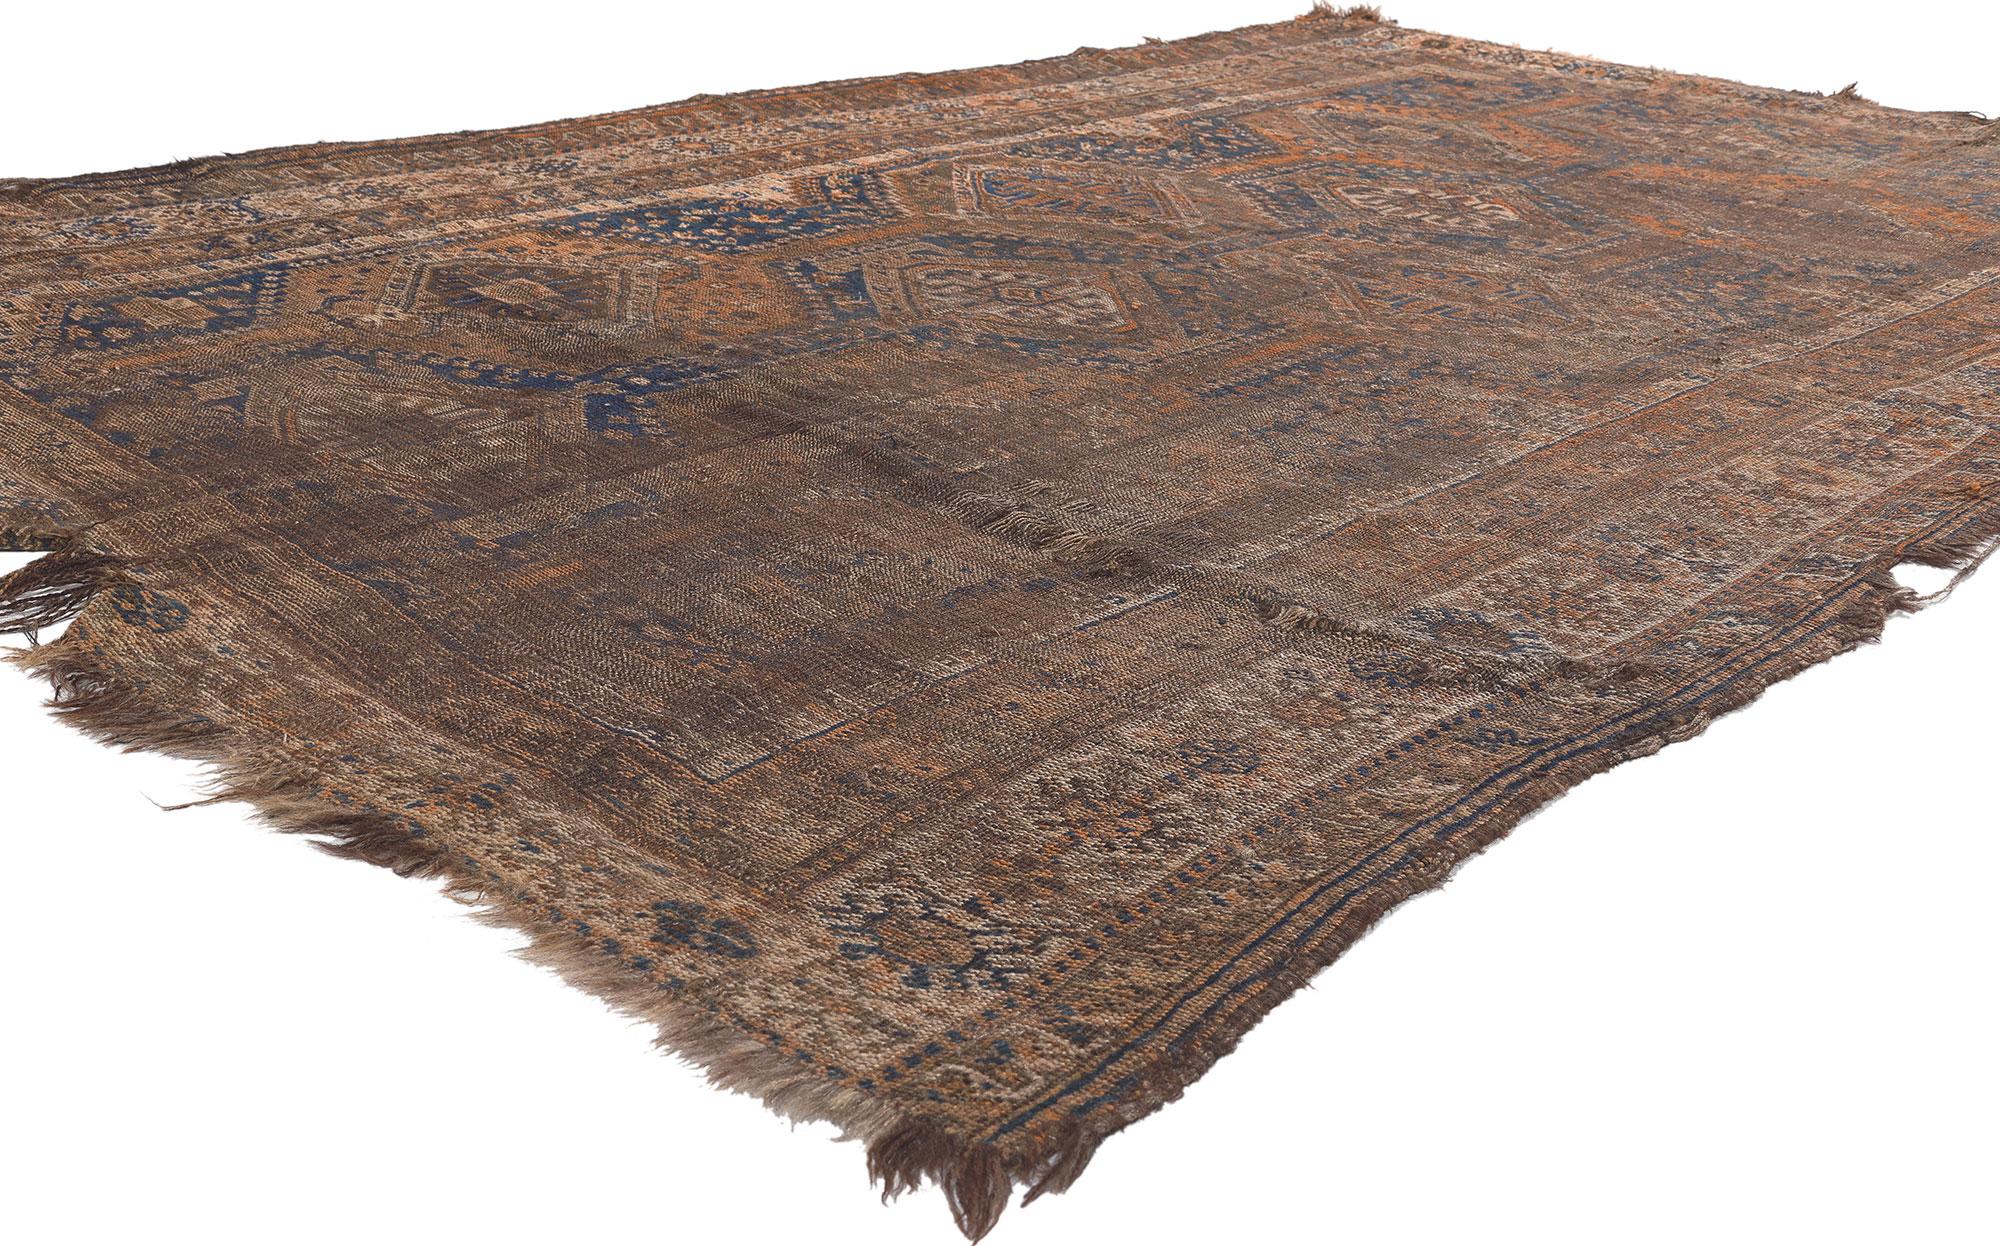 78530 Tapis persan Shiraz, 05'10 x 09'05. Un tapis persan de Chiraz est un tapis traditionnel fabriqué à la main dans la ville de Chiraz en Iran, appartenant à la catégorie plus large des tapis persans. Connus pour leurs couleurs vives, leurs motifs